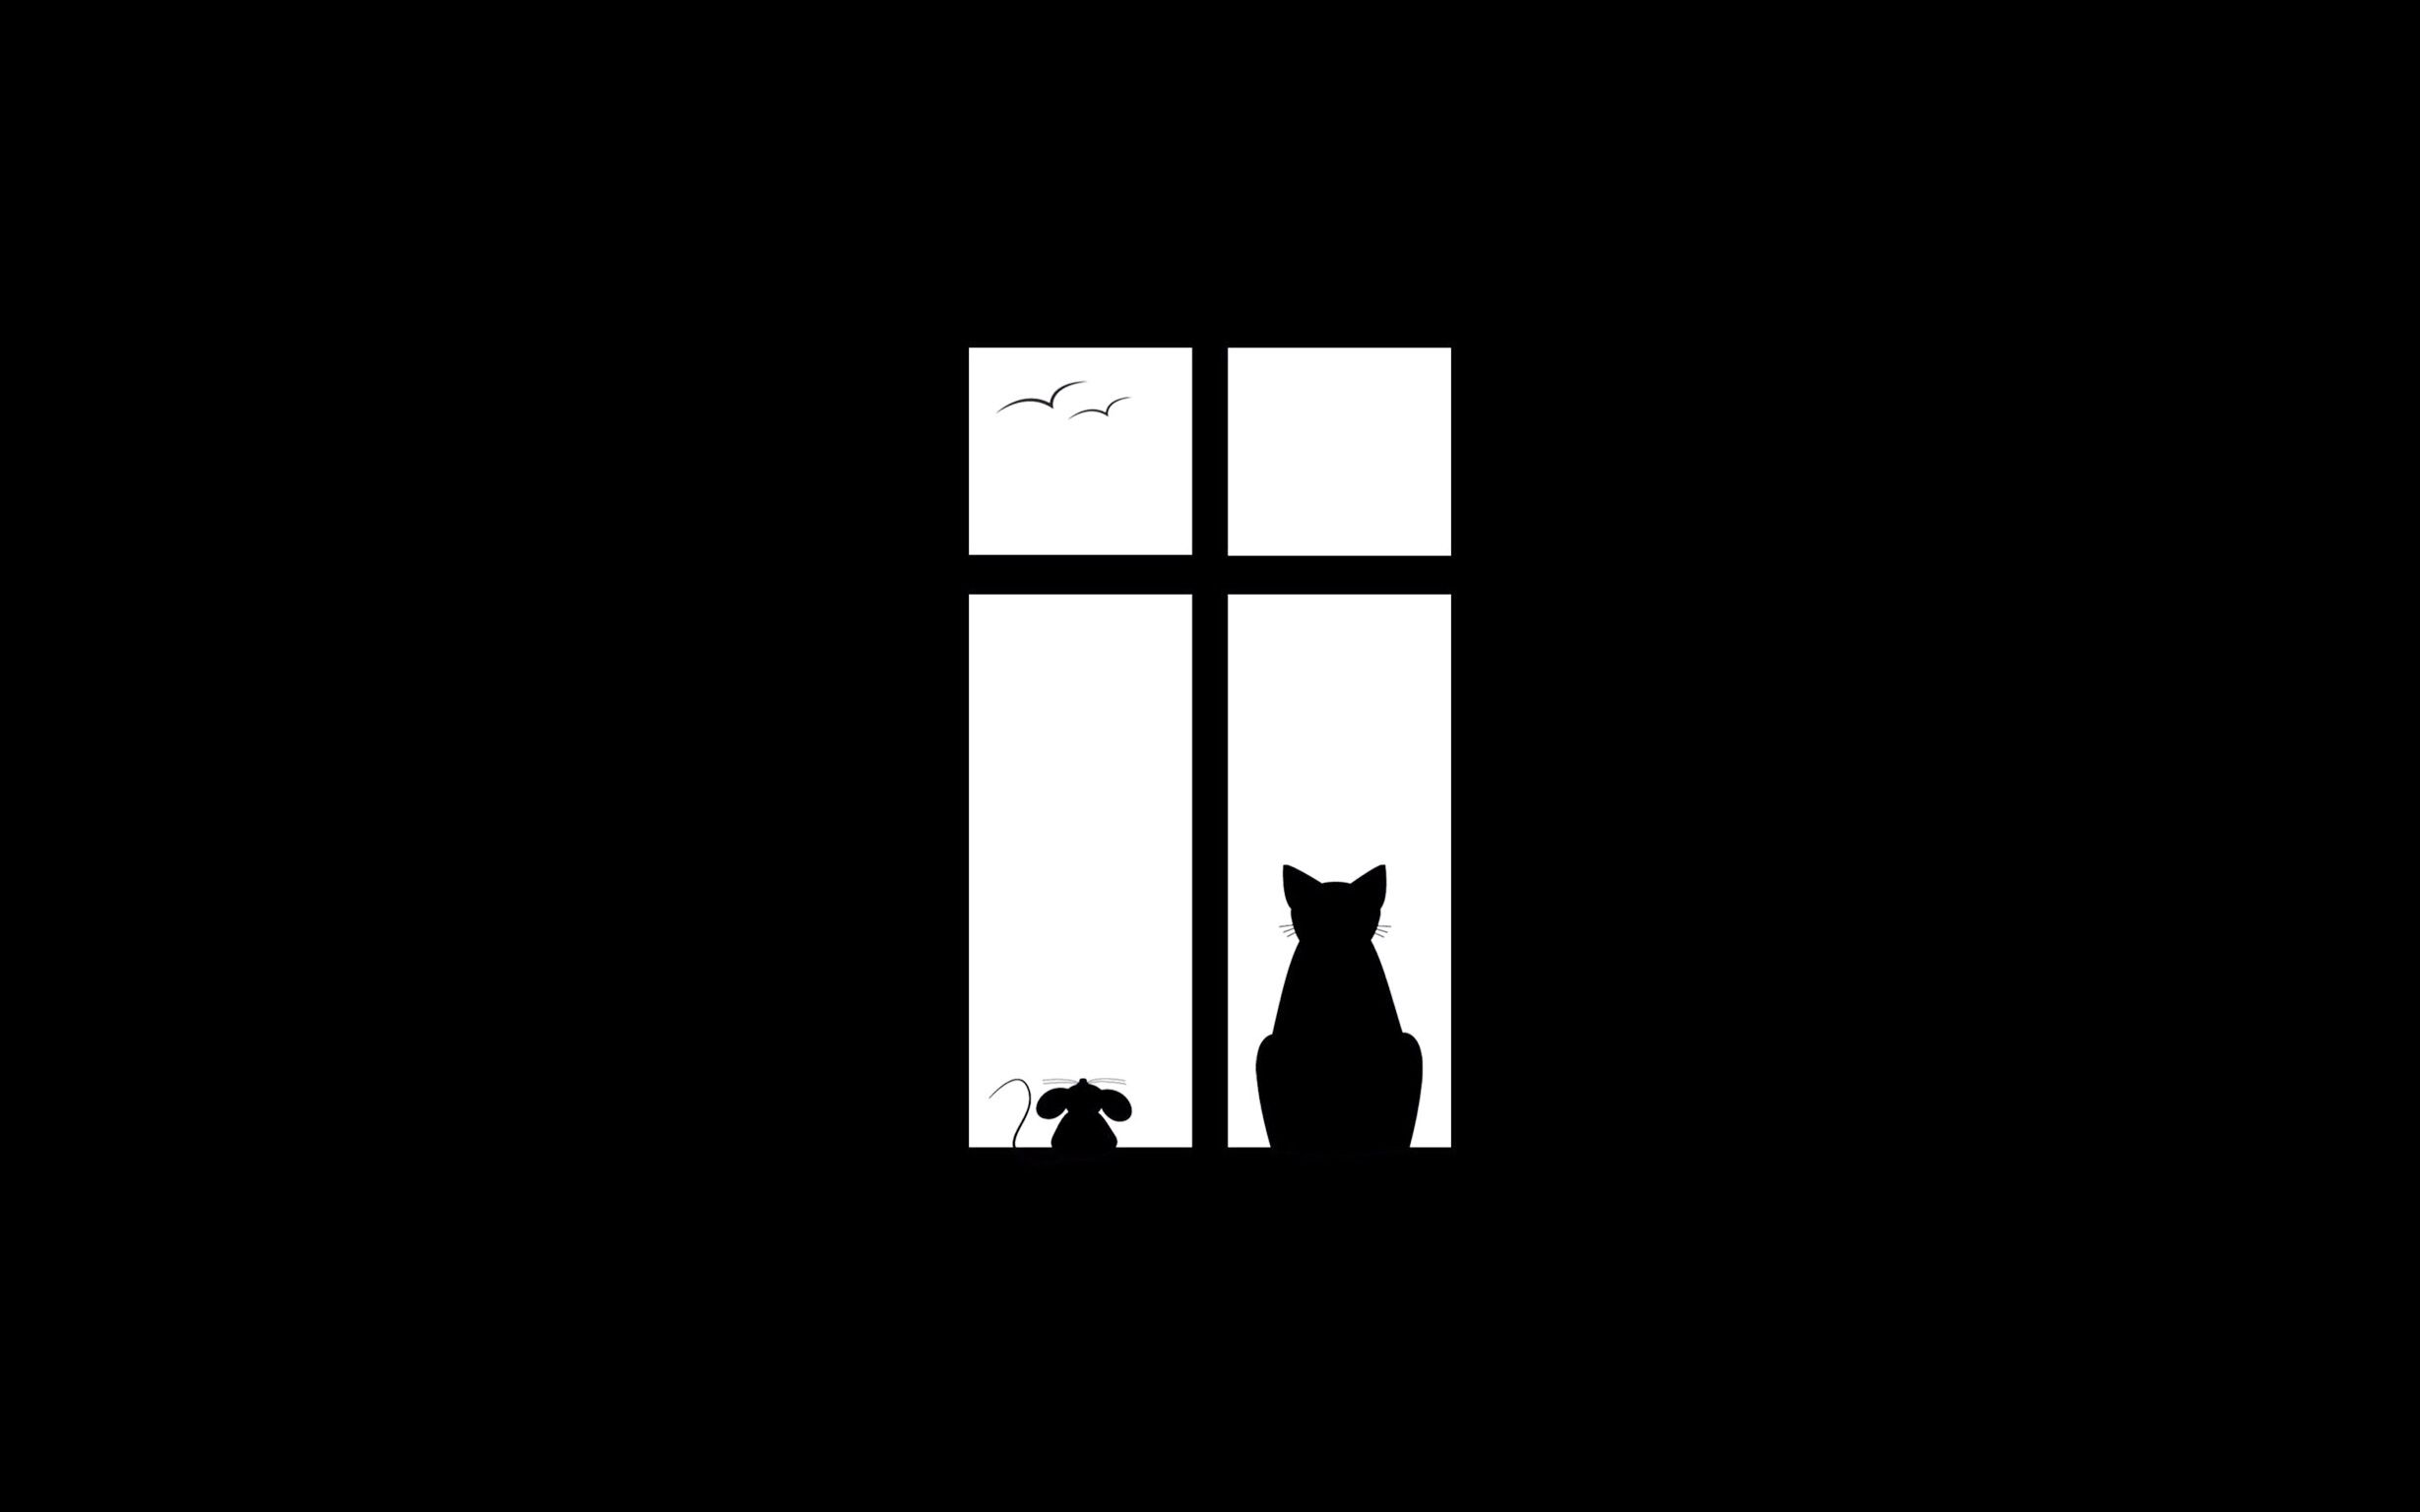 Silhouette of cat & mouse in window. Papel de parede minimalista